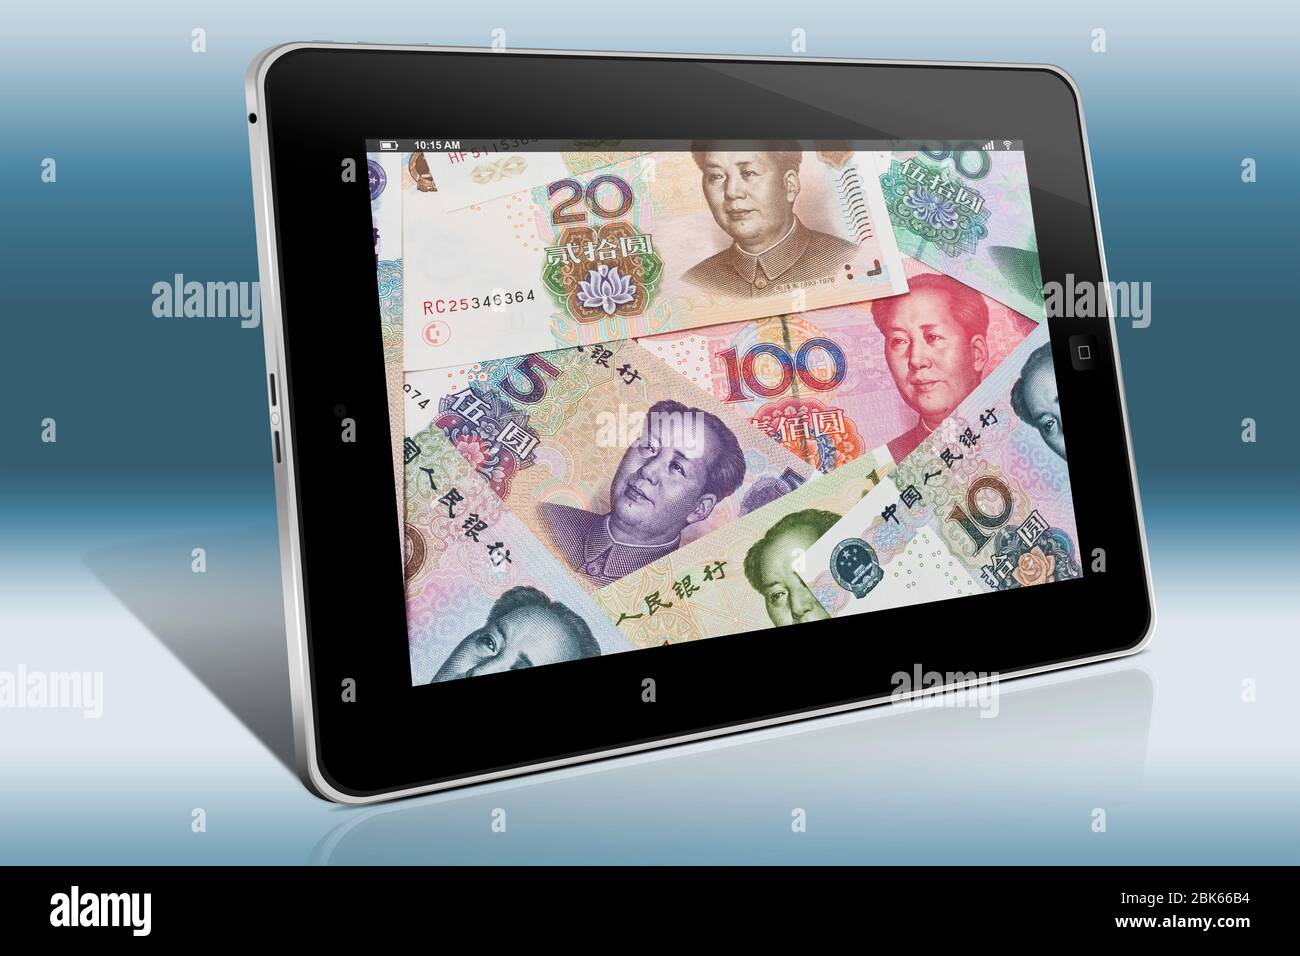 Viele Yuan Rechnungen mit dem Porträt von Mao Zedong nebeneinander liegen. Die chinesische Währung Renminbi, wurde 1949 eingeführt. Stockfoto